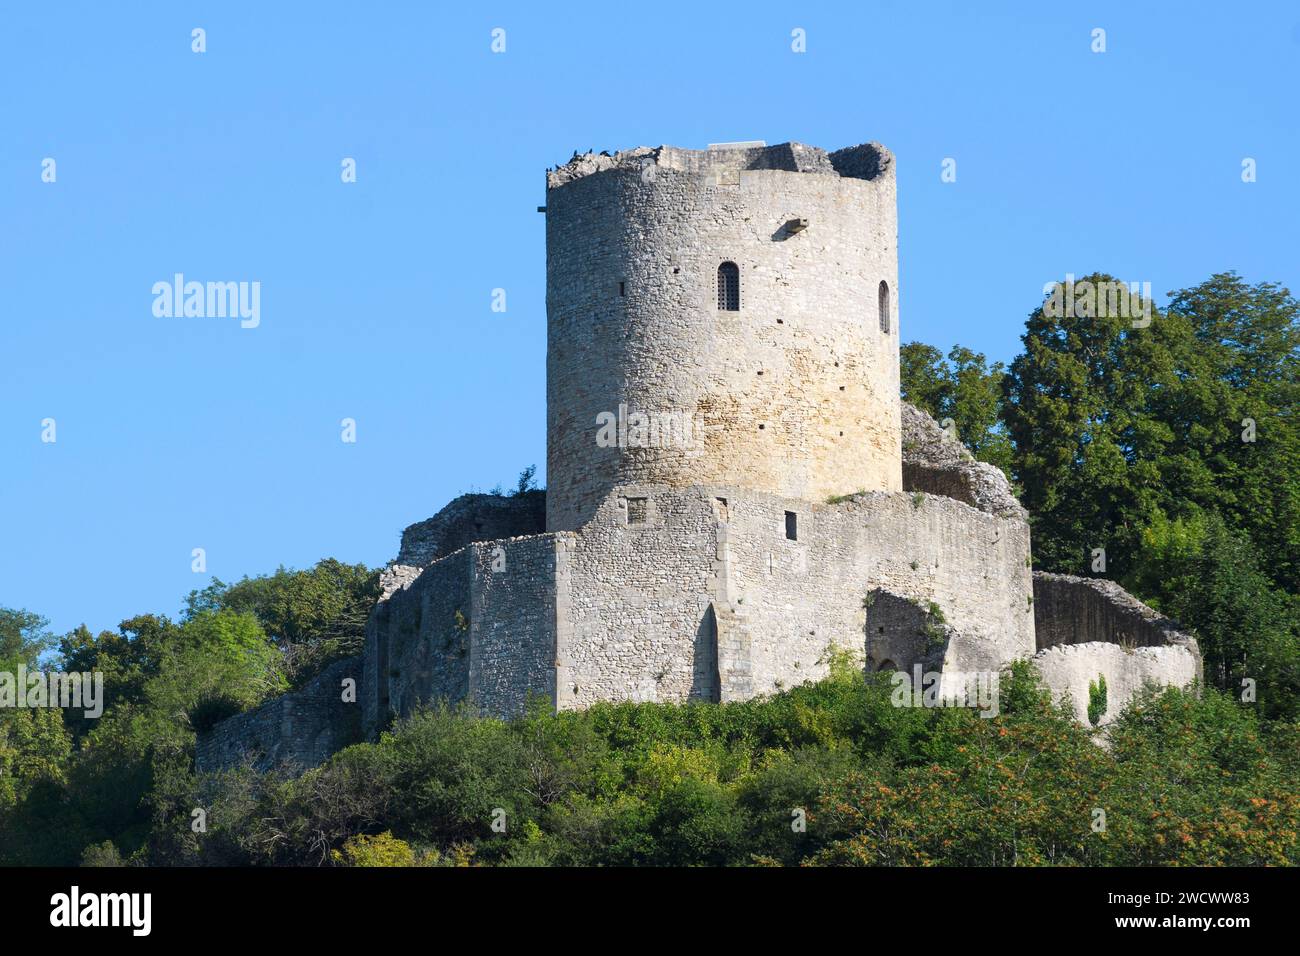 Région Ile de France, Val d'Oise, la Roche-Guyon, donjon sur château forme potager Banque D'Images